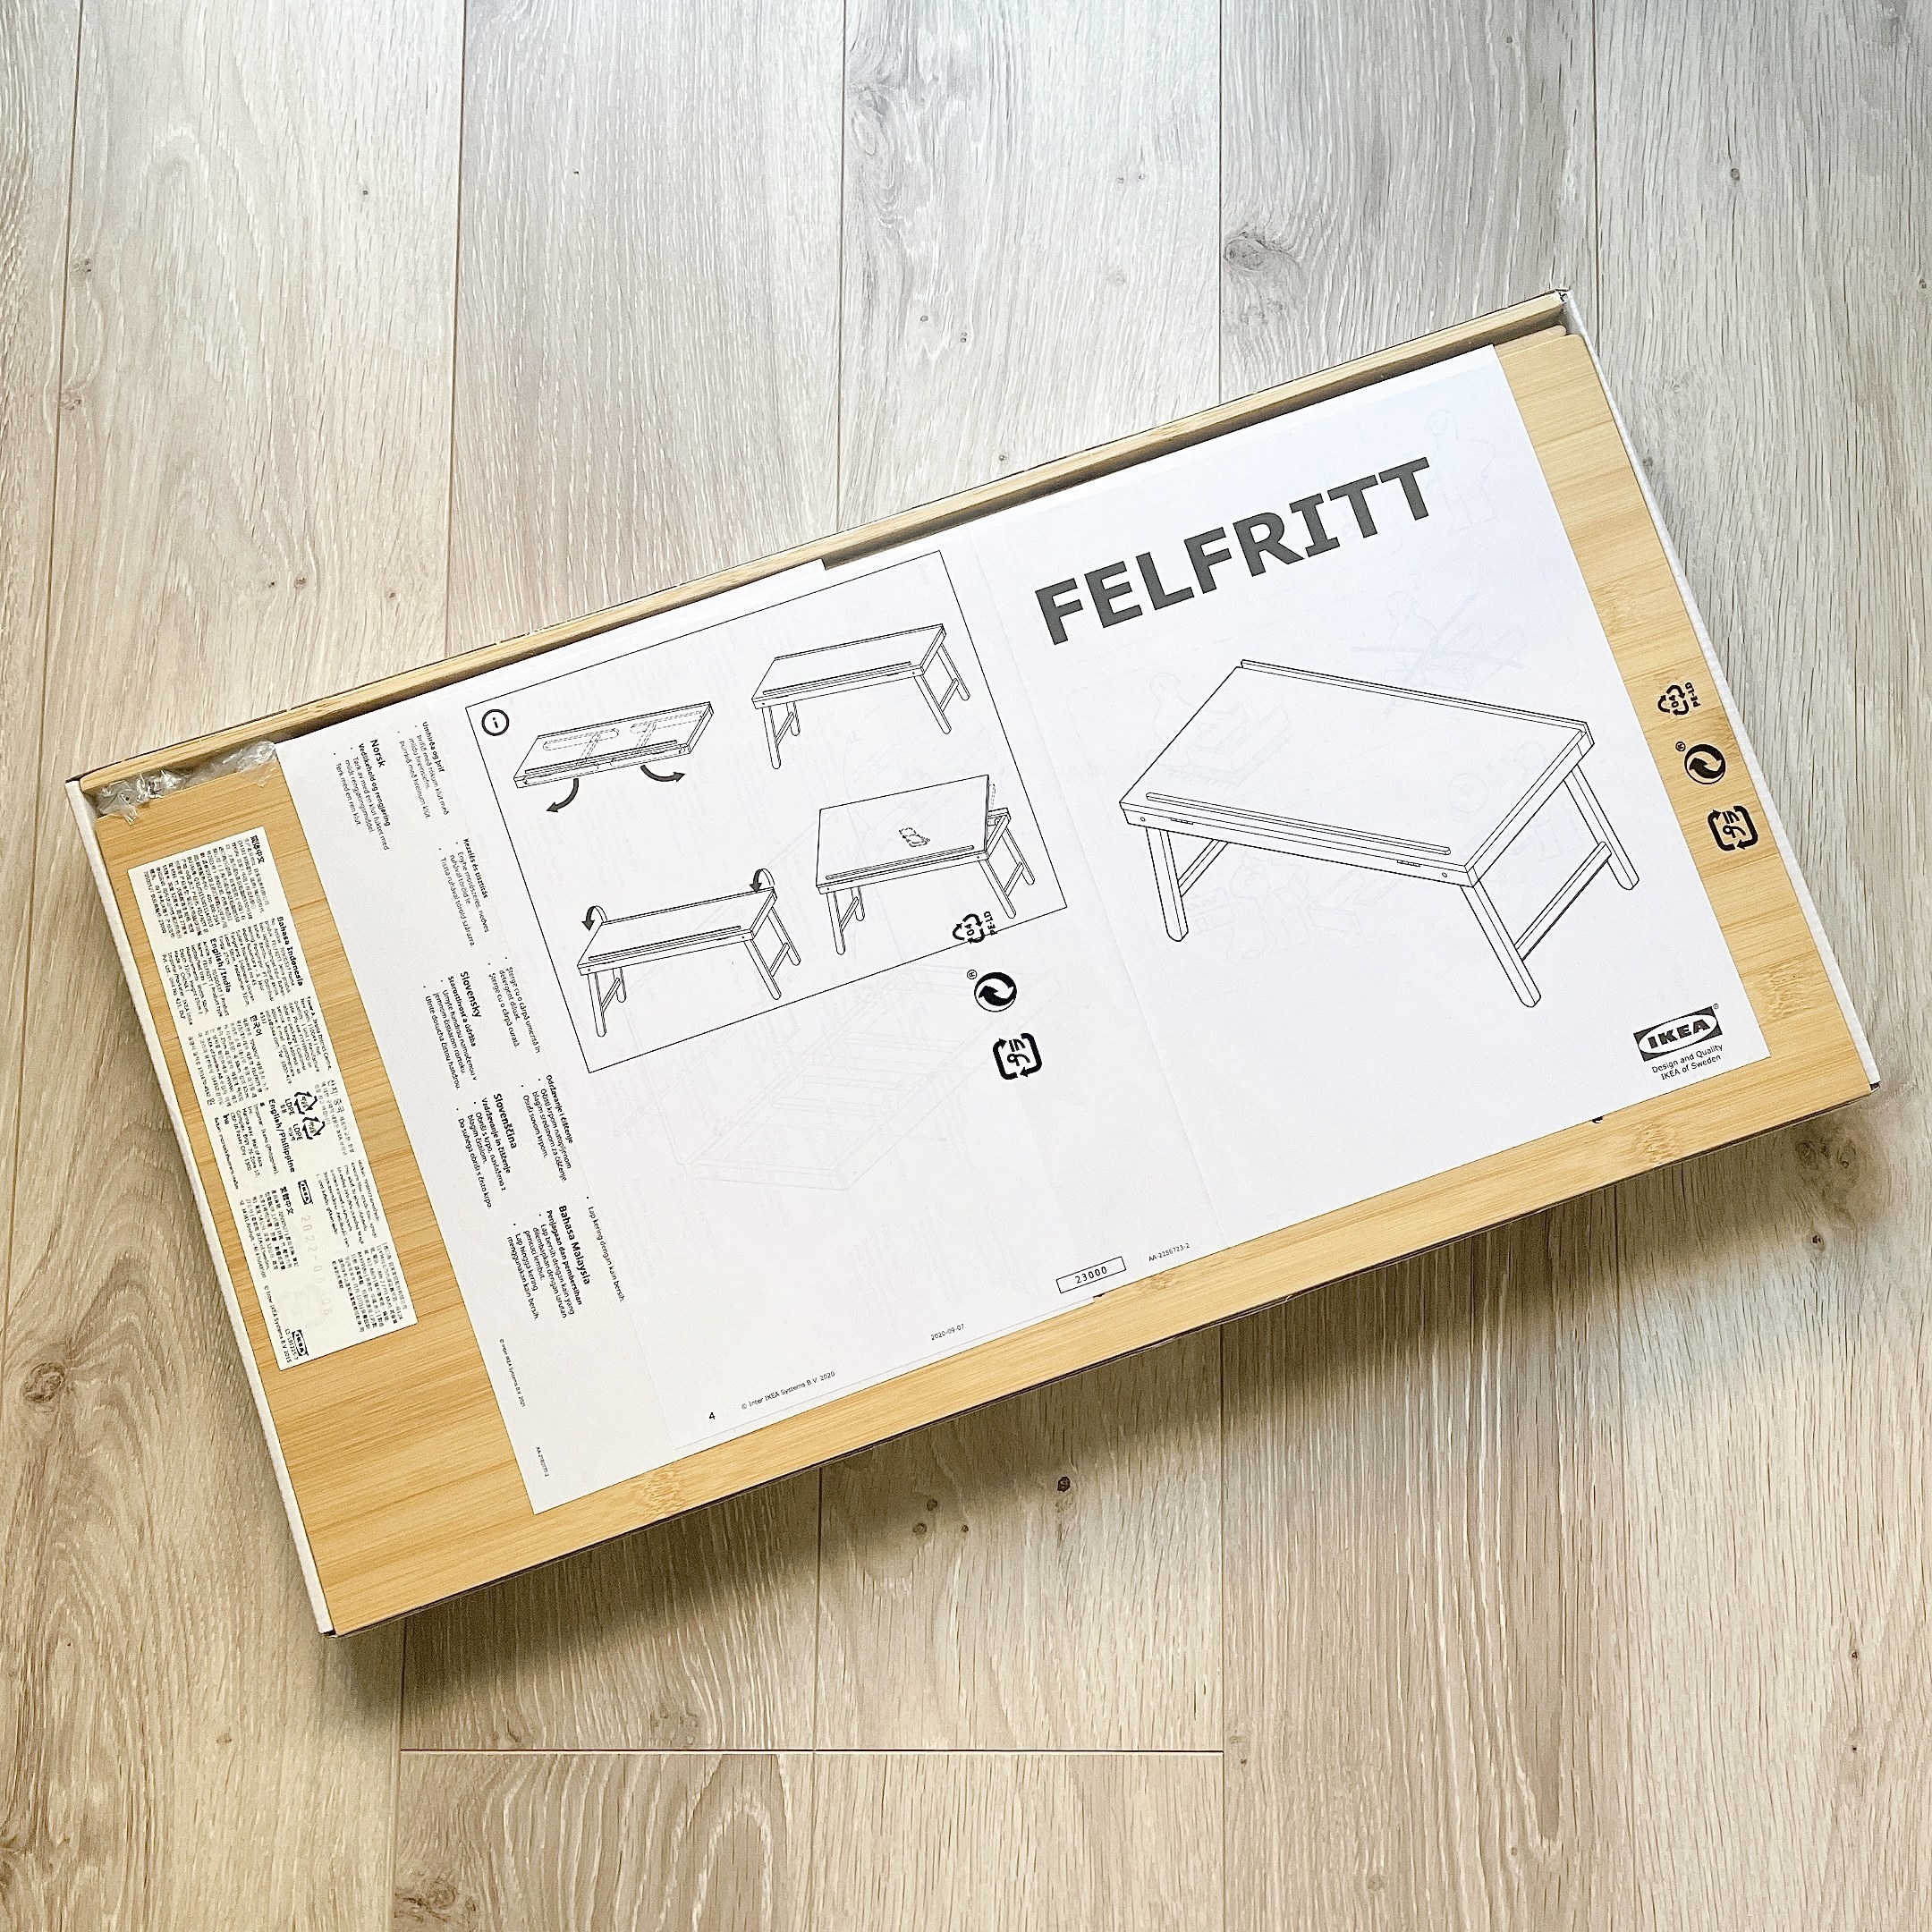 IKEA（イケア）のおすすめの便利グッズ「FELFRITT フェルフリット ラップトップ」